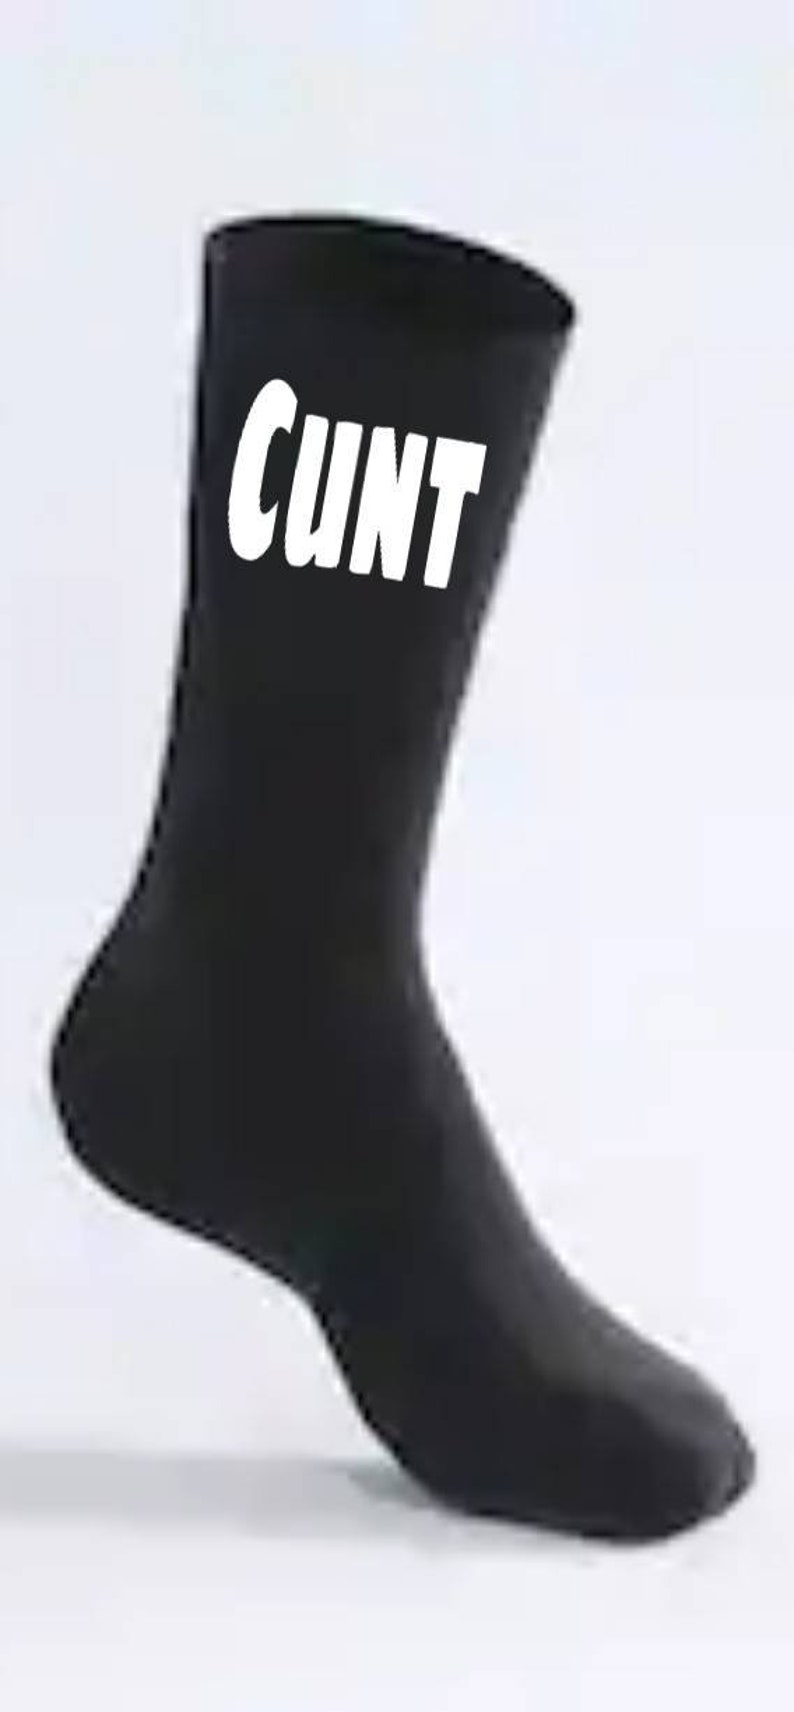 Cunt Socks. Funny Socks Joke Socks Stocking Fillers Mens - Etsy